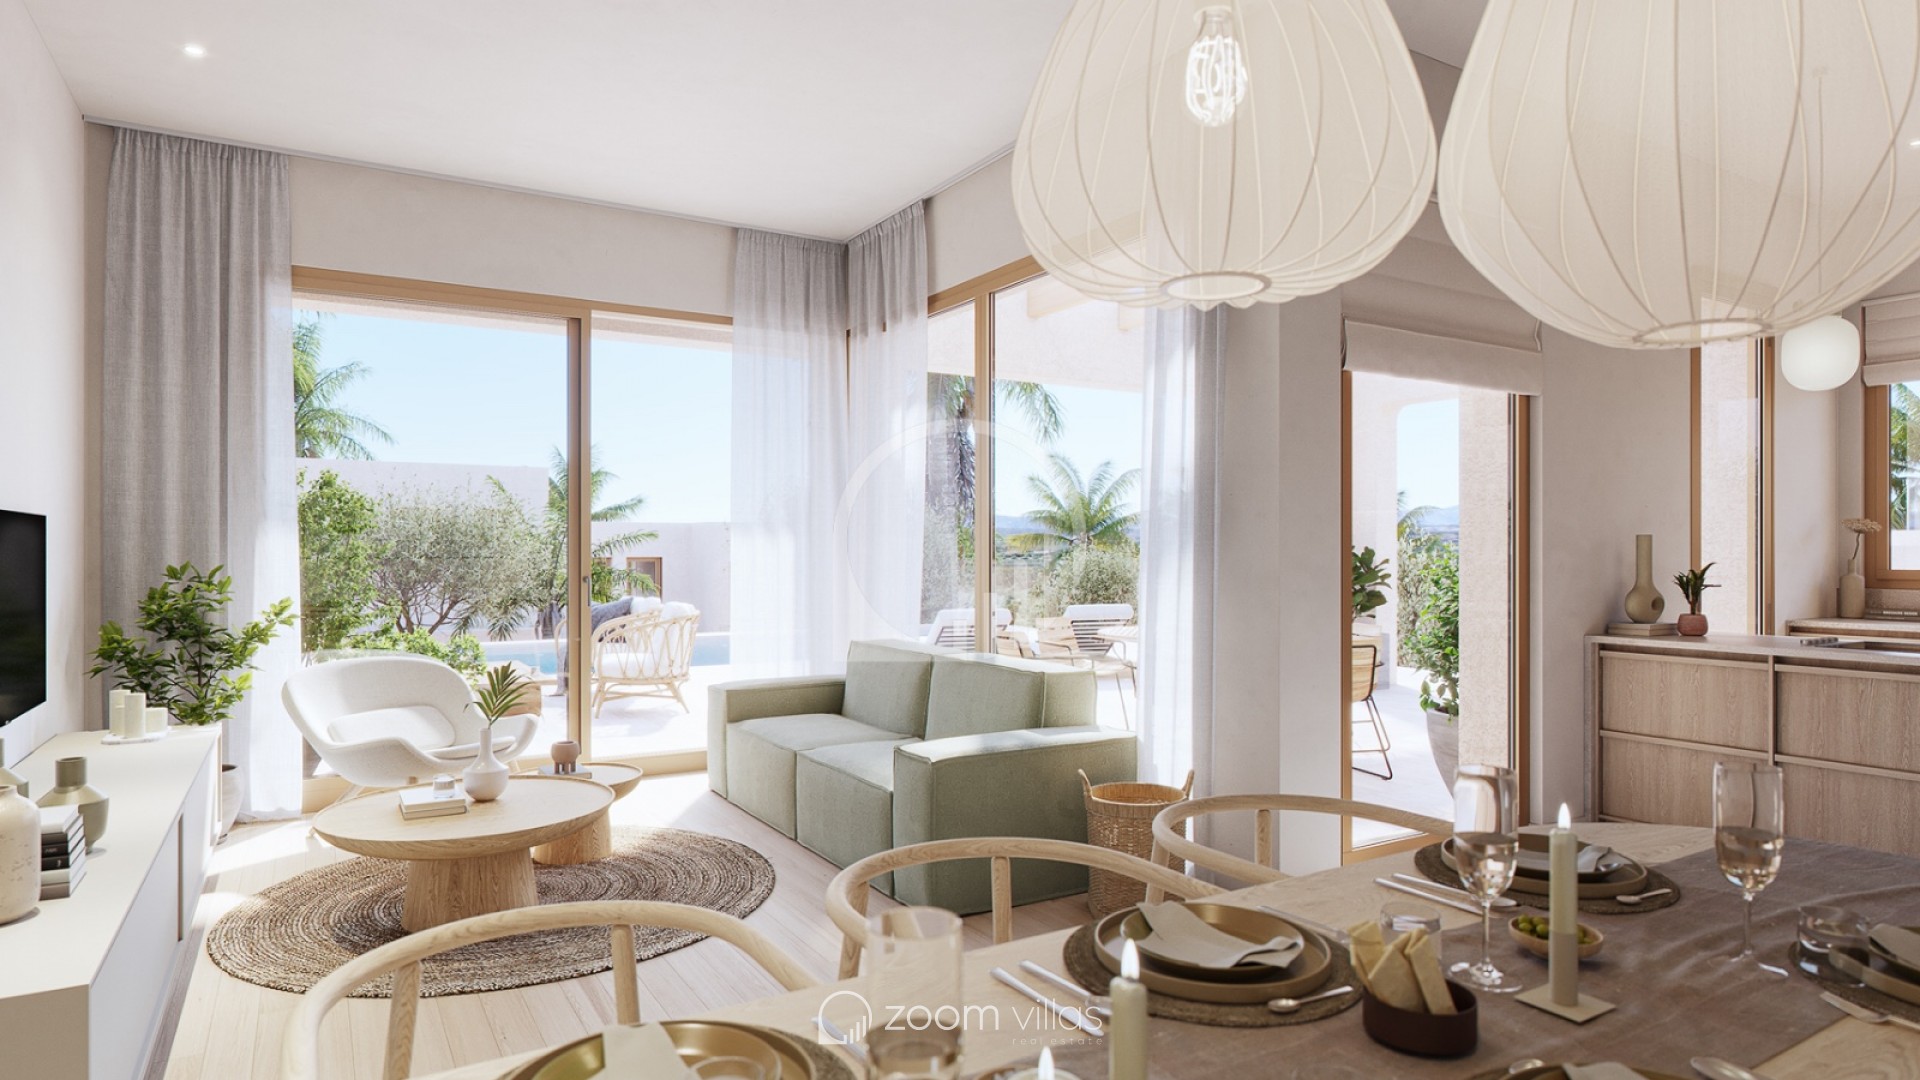 Villa zum verkauf in Moraira mit modernen Wohnzimmer | Zoom Villas